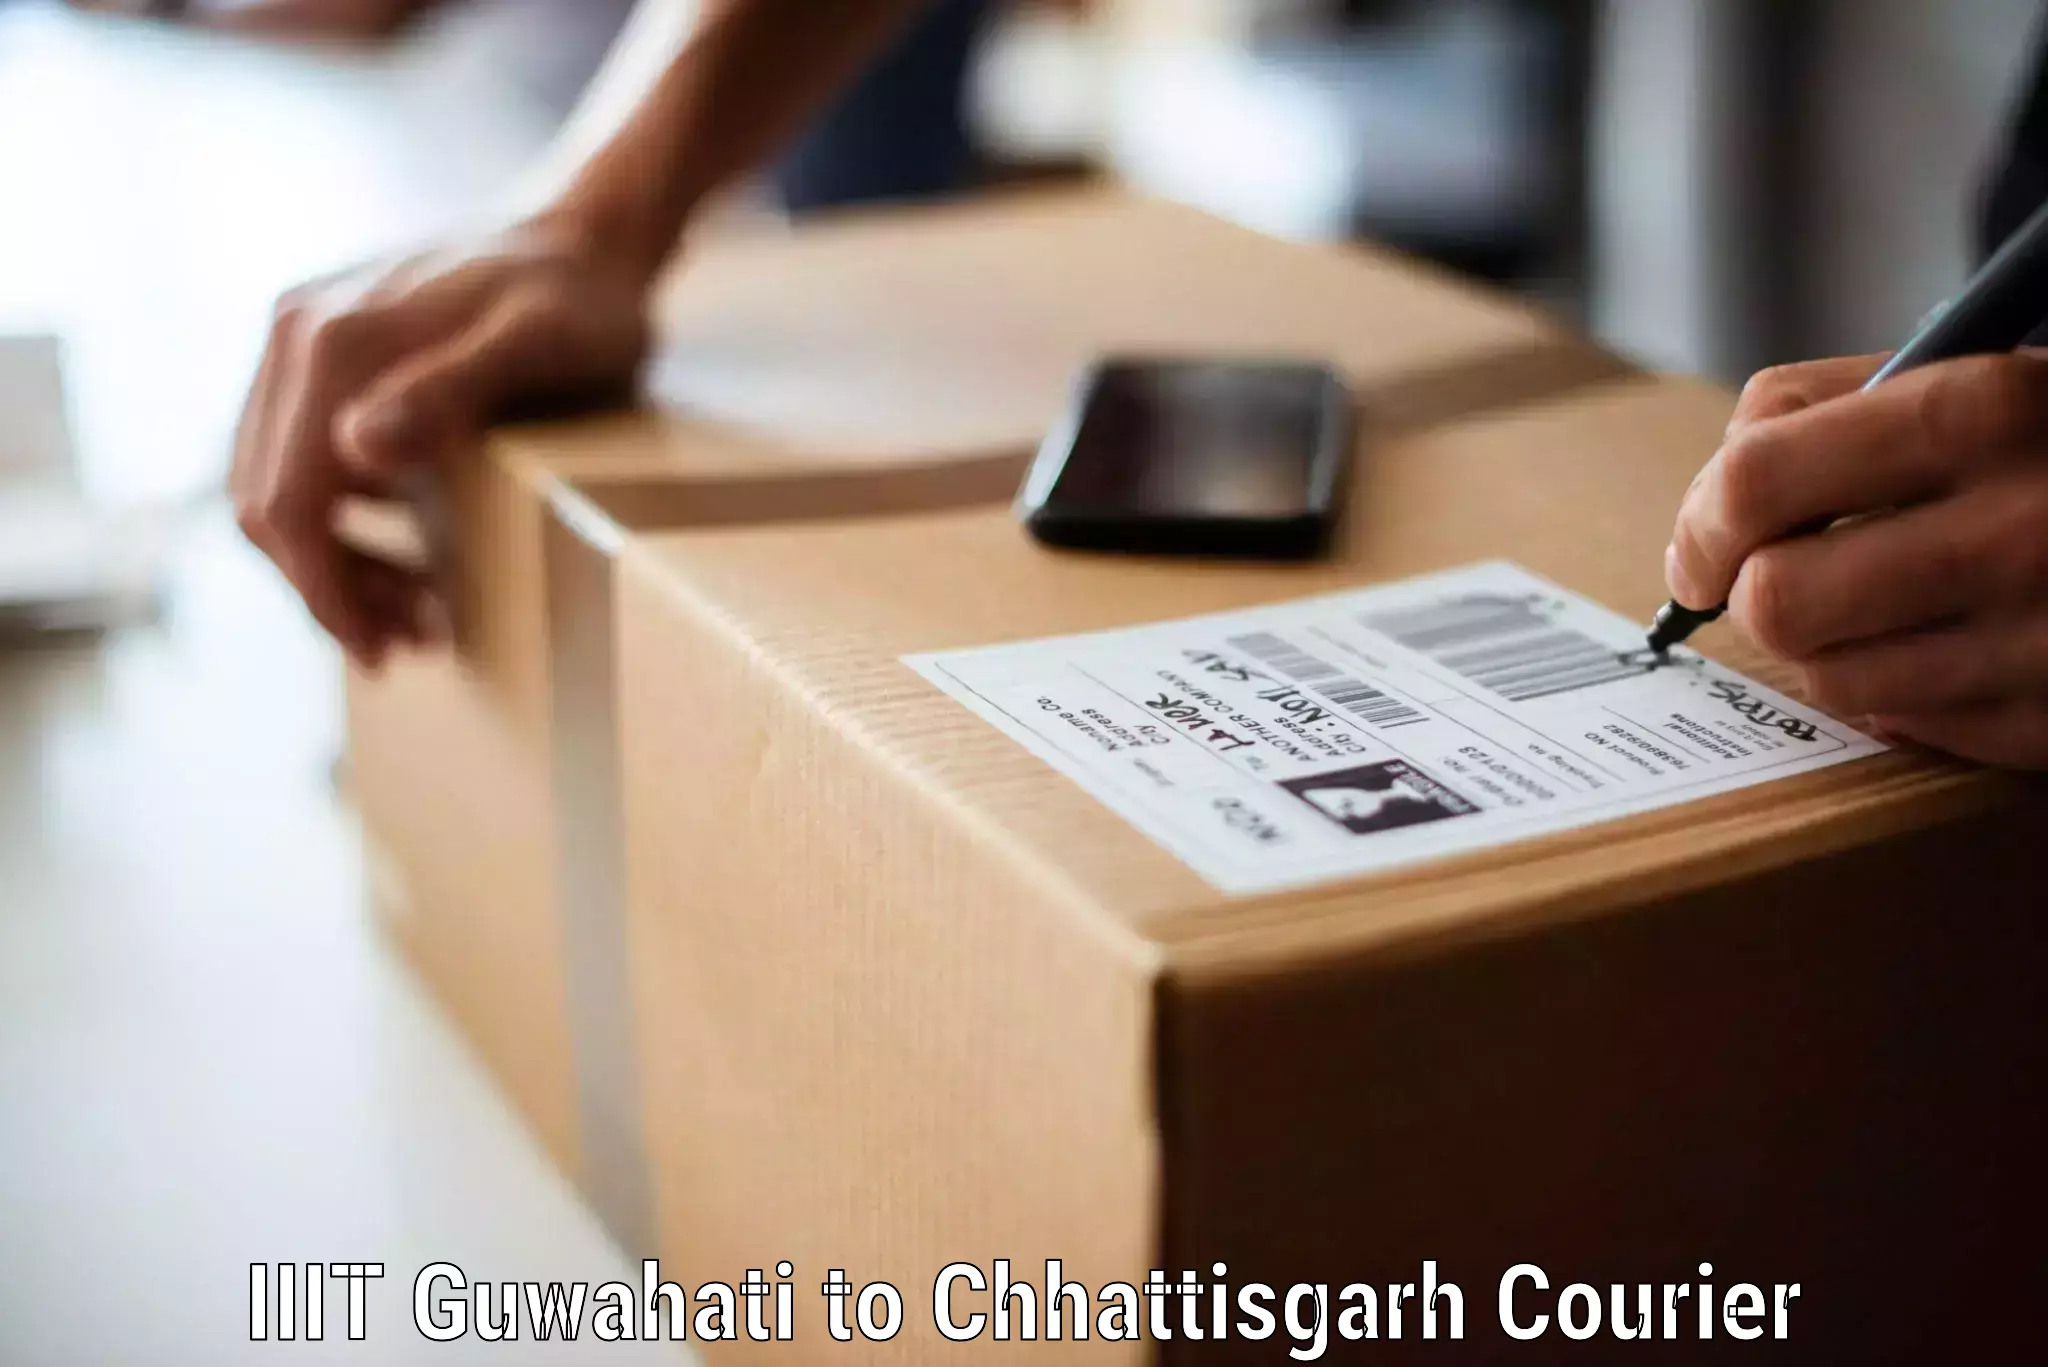 Furniture moving service IIIT Guwahati to Chhattisgarh